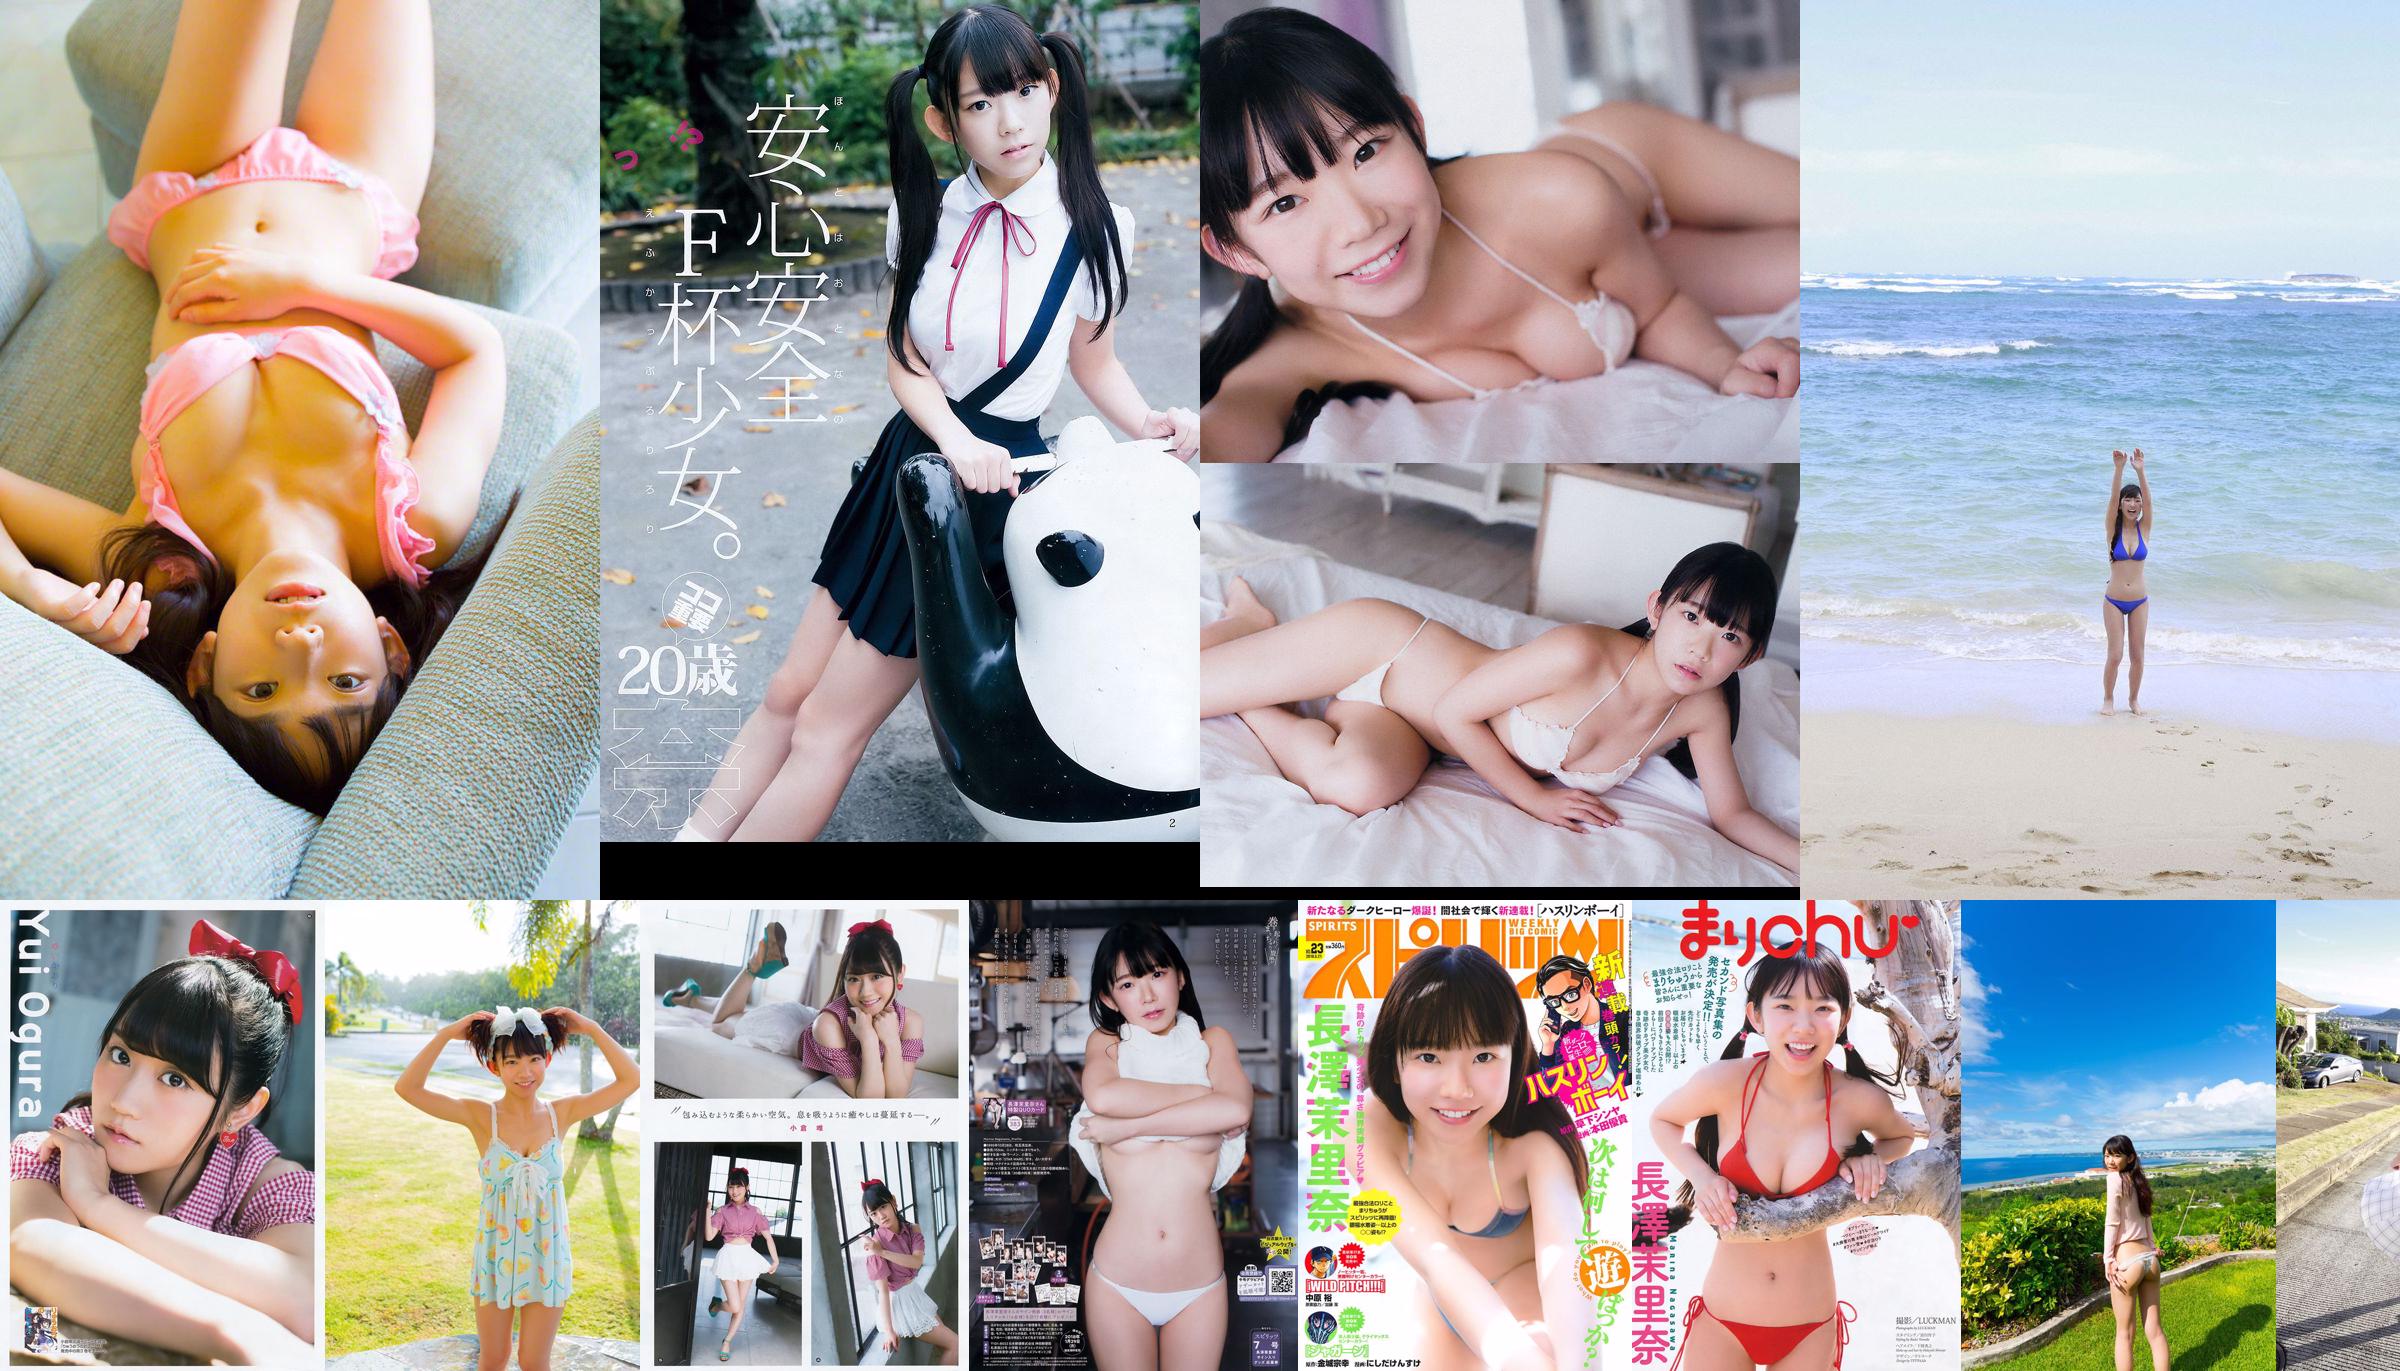 [WPB-net] Extra No. 584 Marina Nagasawa Nagasawa Morina "Bah っ て き た Legal Rory Big Tits!! ความรู้สึกผิด" No.057a64 หน้า 5